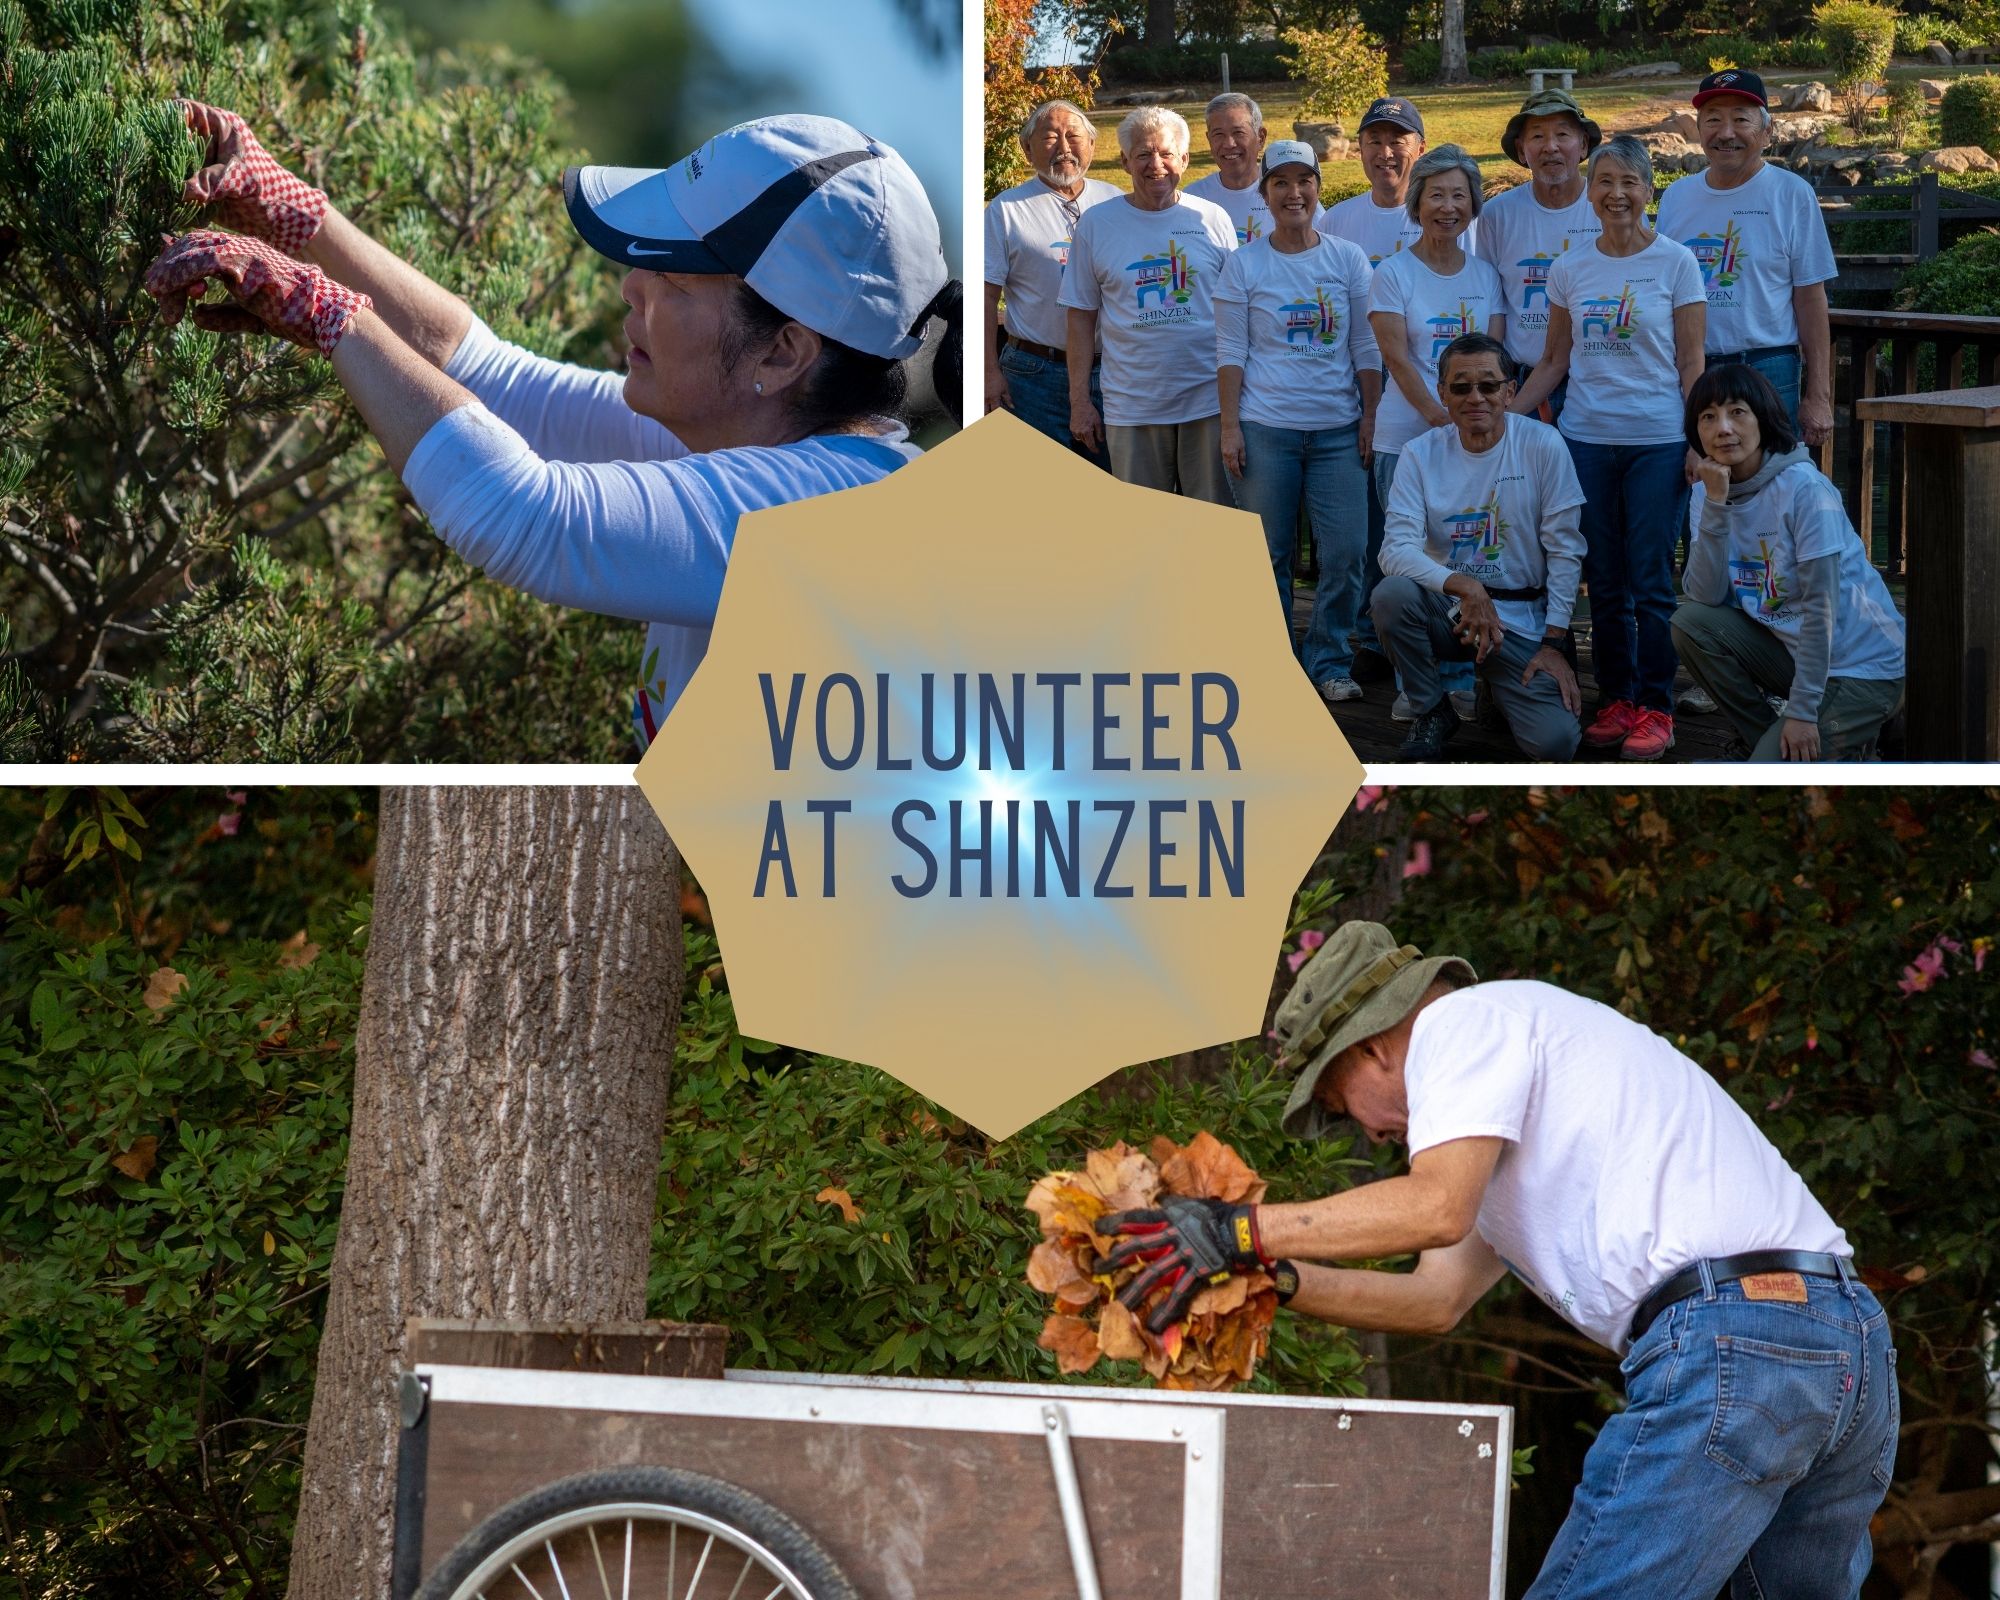 volunteer at shinzen photo array